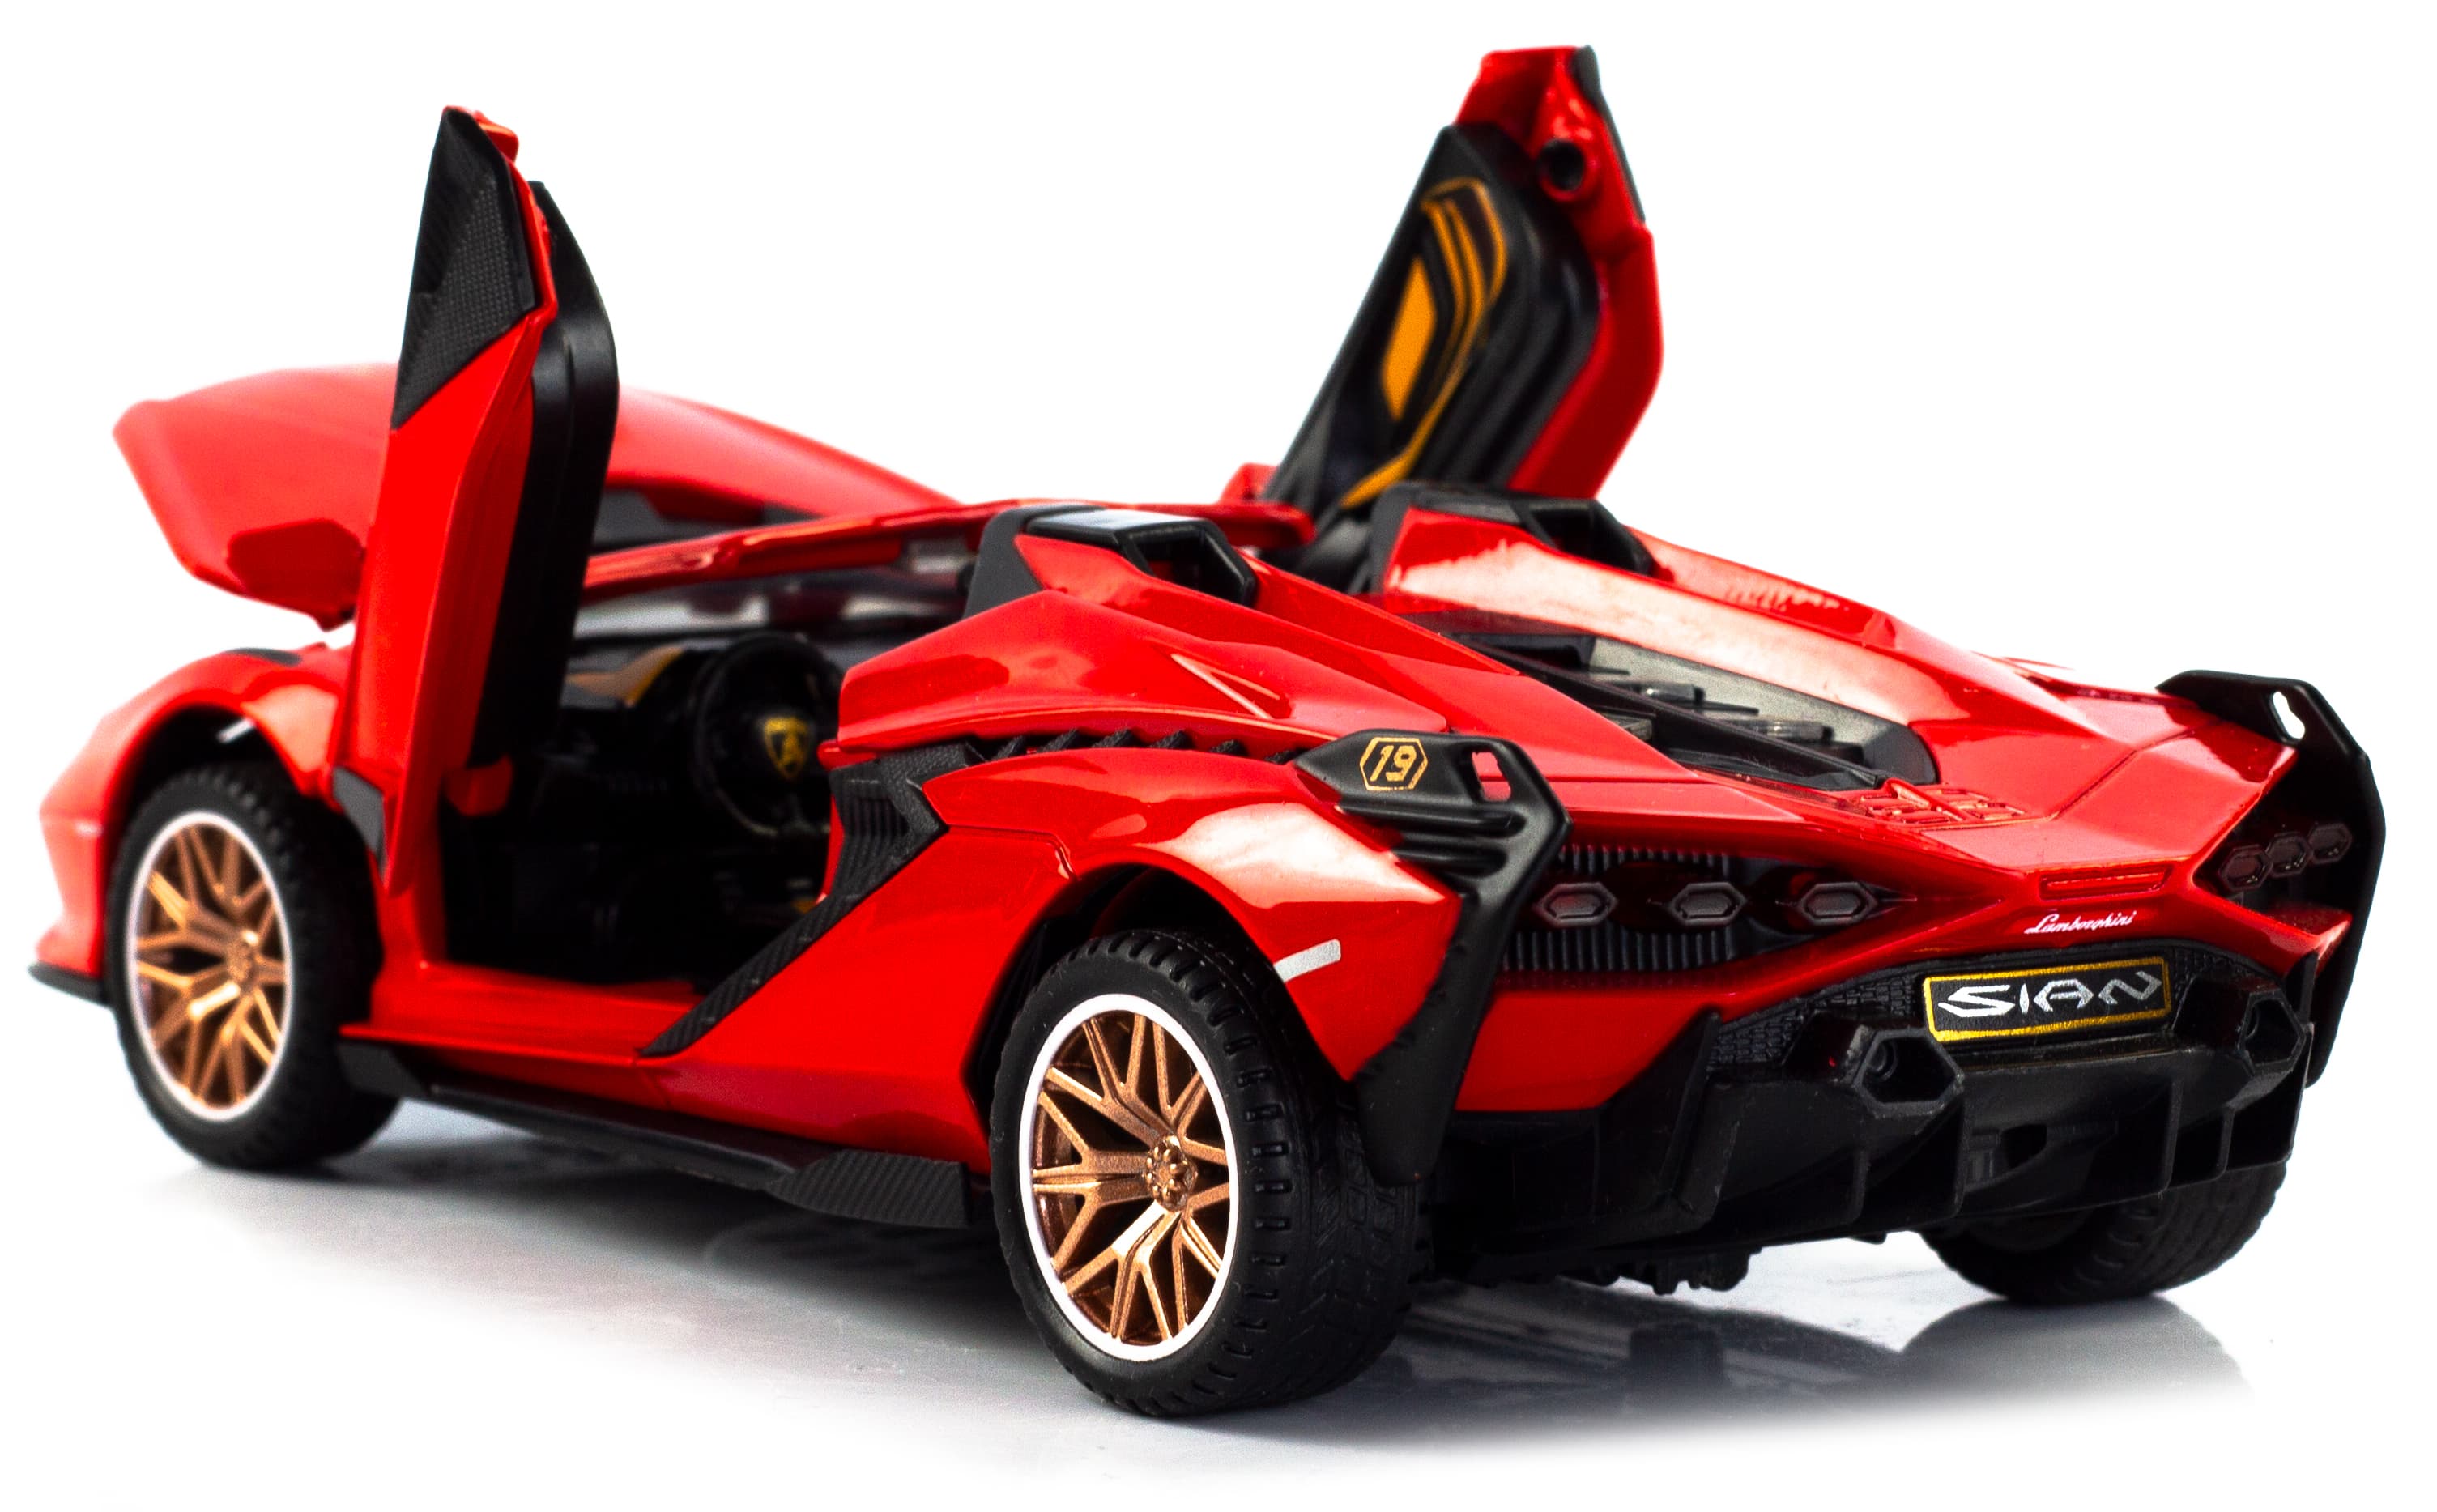 Металлическая машинка Double Horses 1:32 «Lamborghini Sian FKP 37 Roadster» 32661 свет и звук, инерционная / Красный